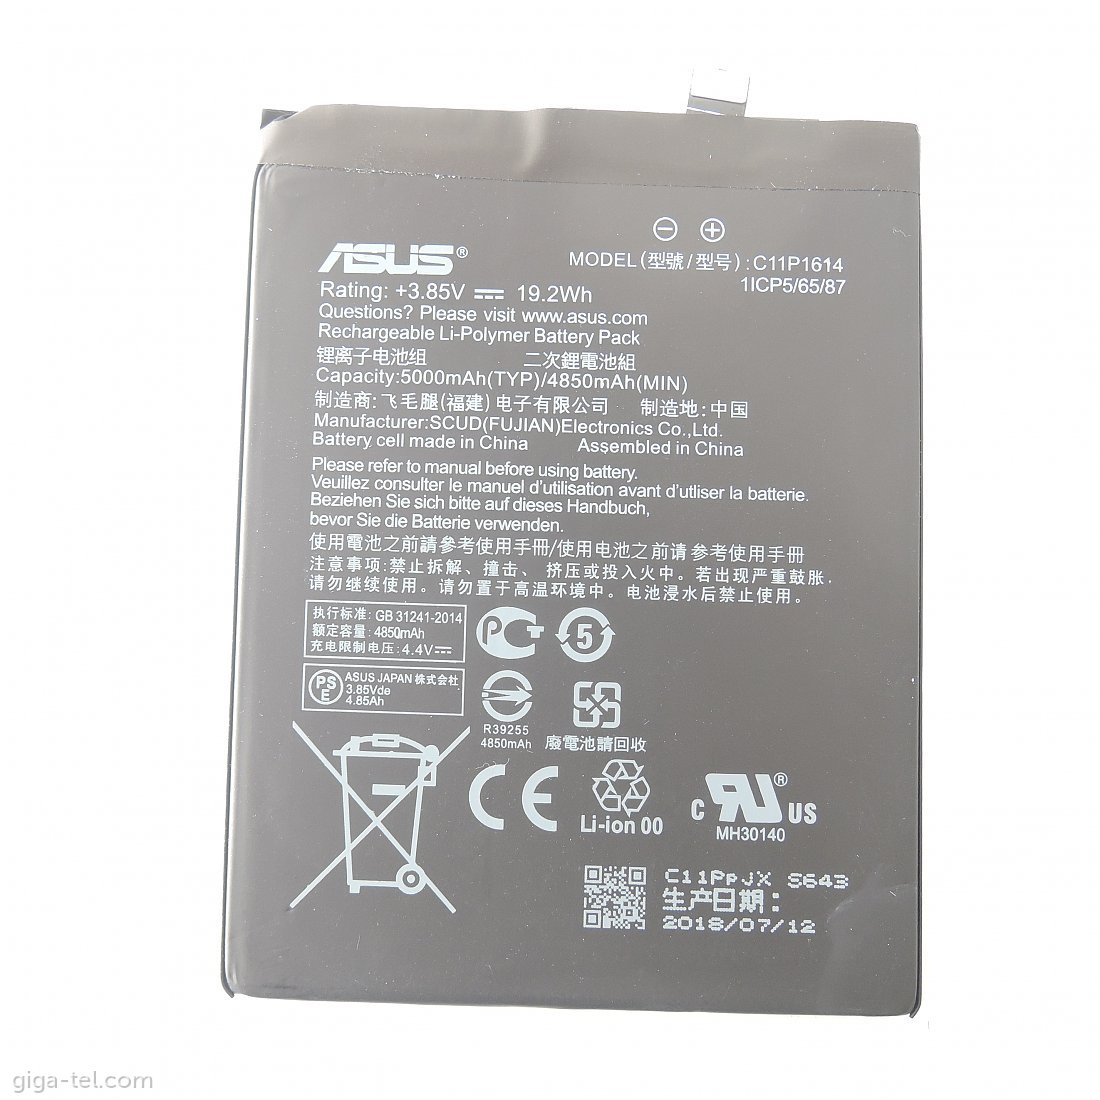 Asus C11P1614 battery